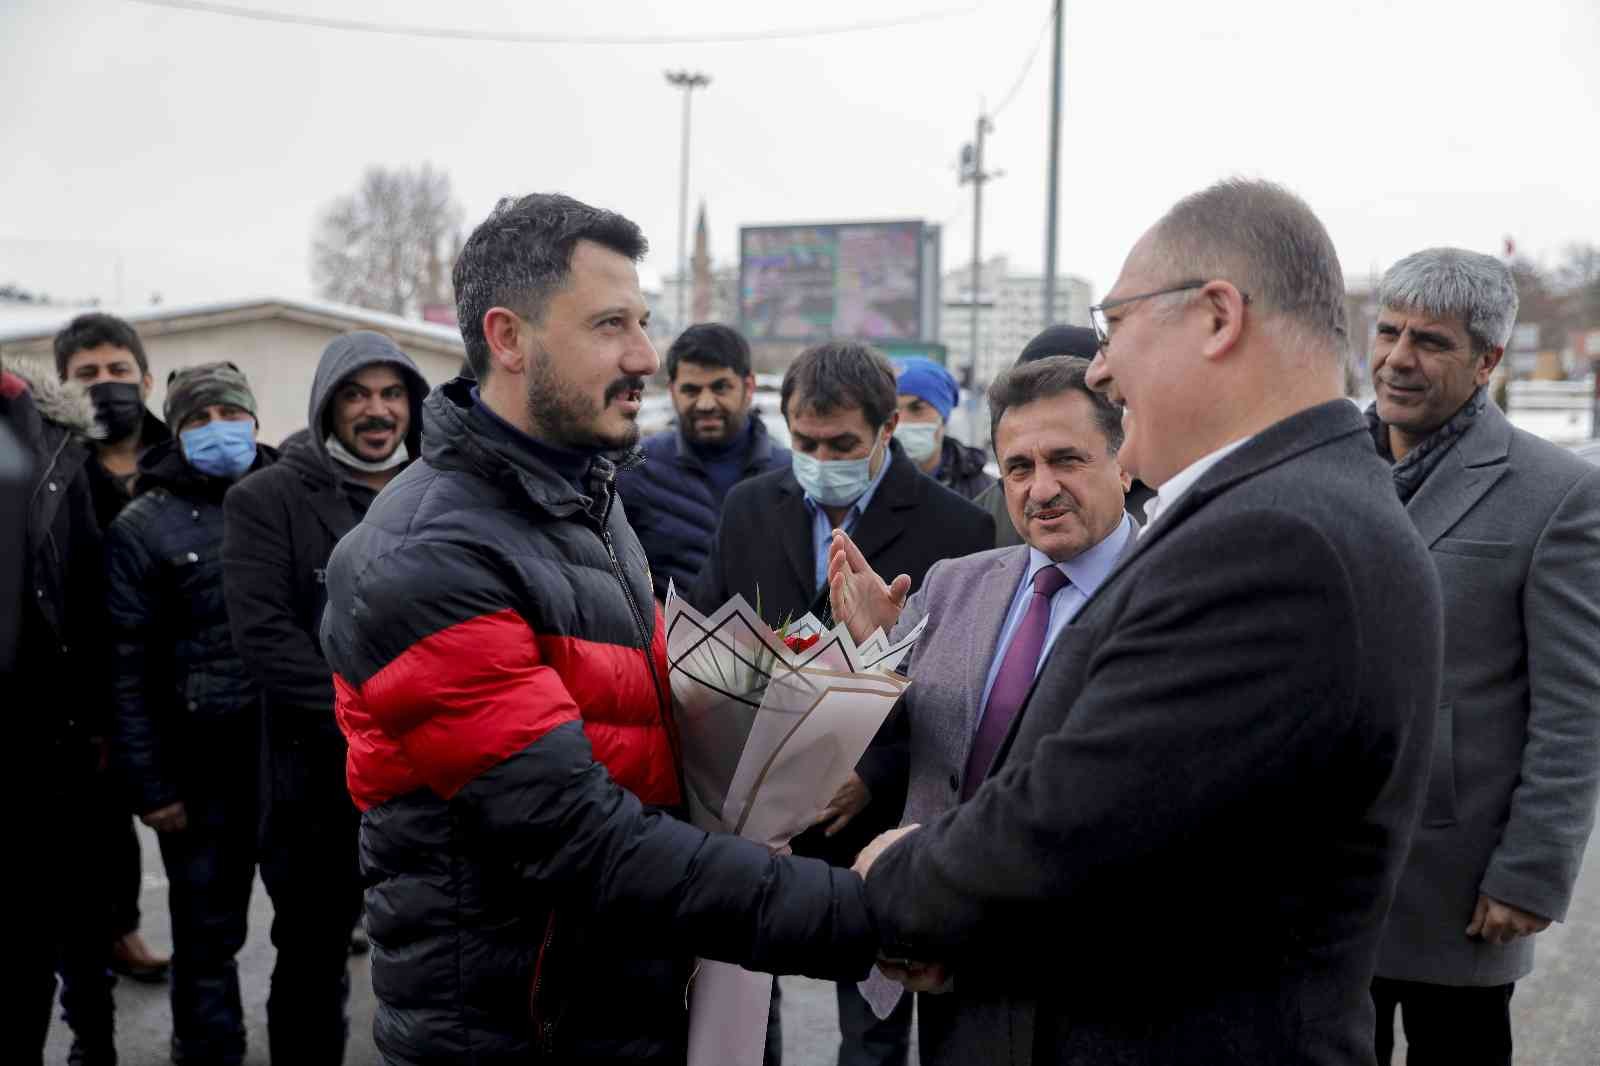 Başkan zam yaptı, işçiler böyle teşekkür etti #sivas